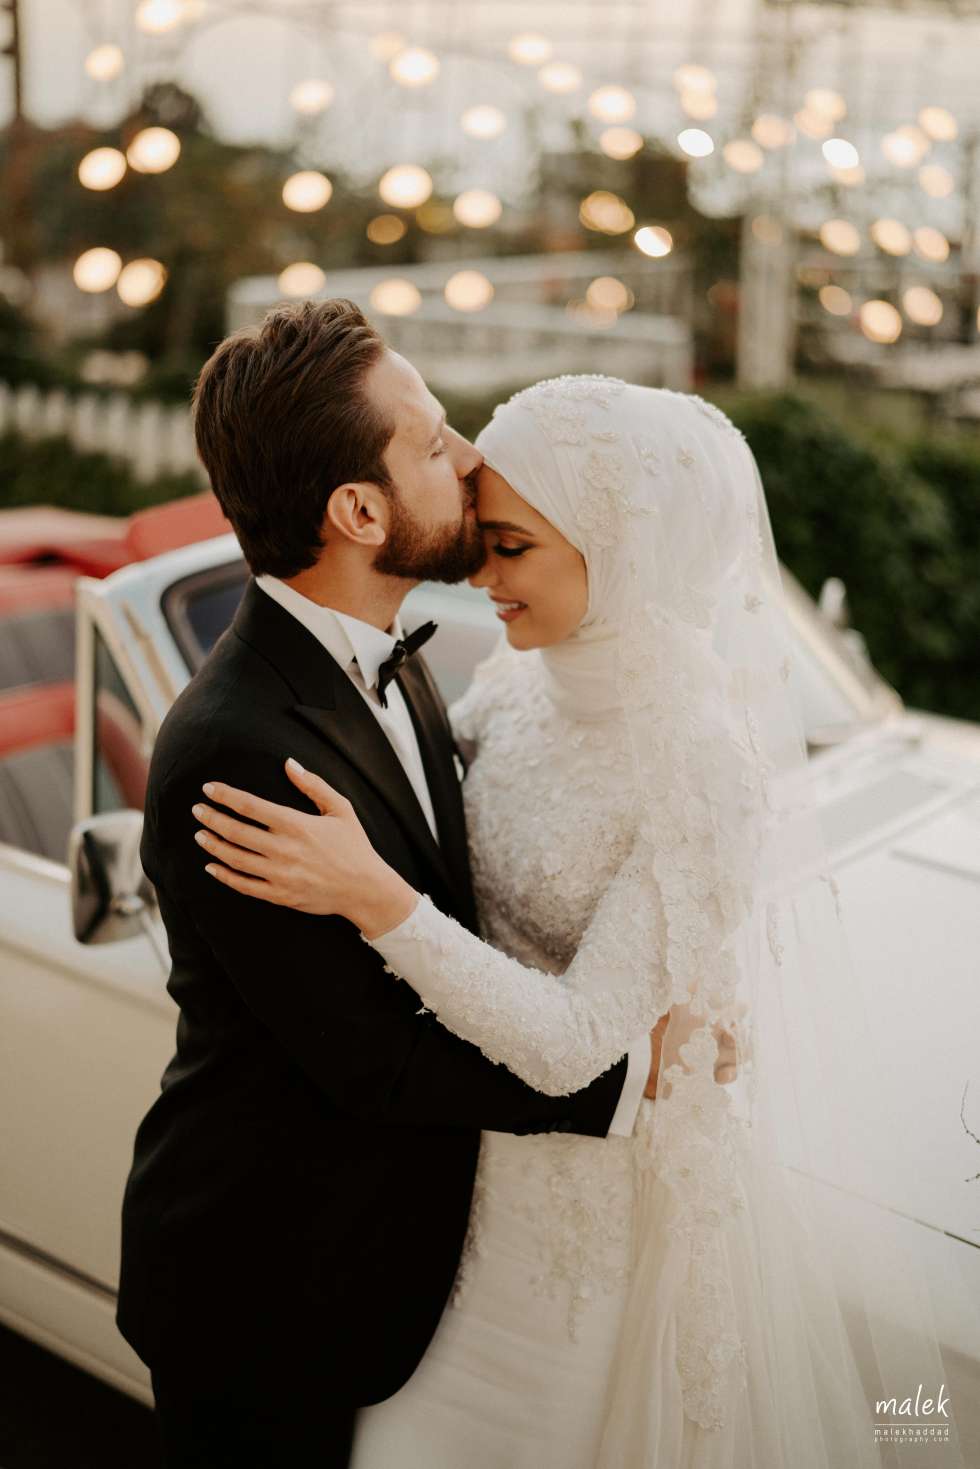 حفل زفاف ميرنا وأحمد الساحر في لبنان